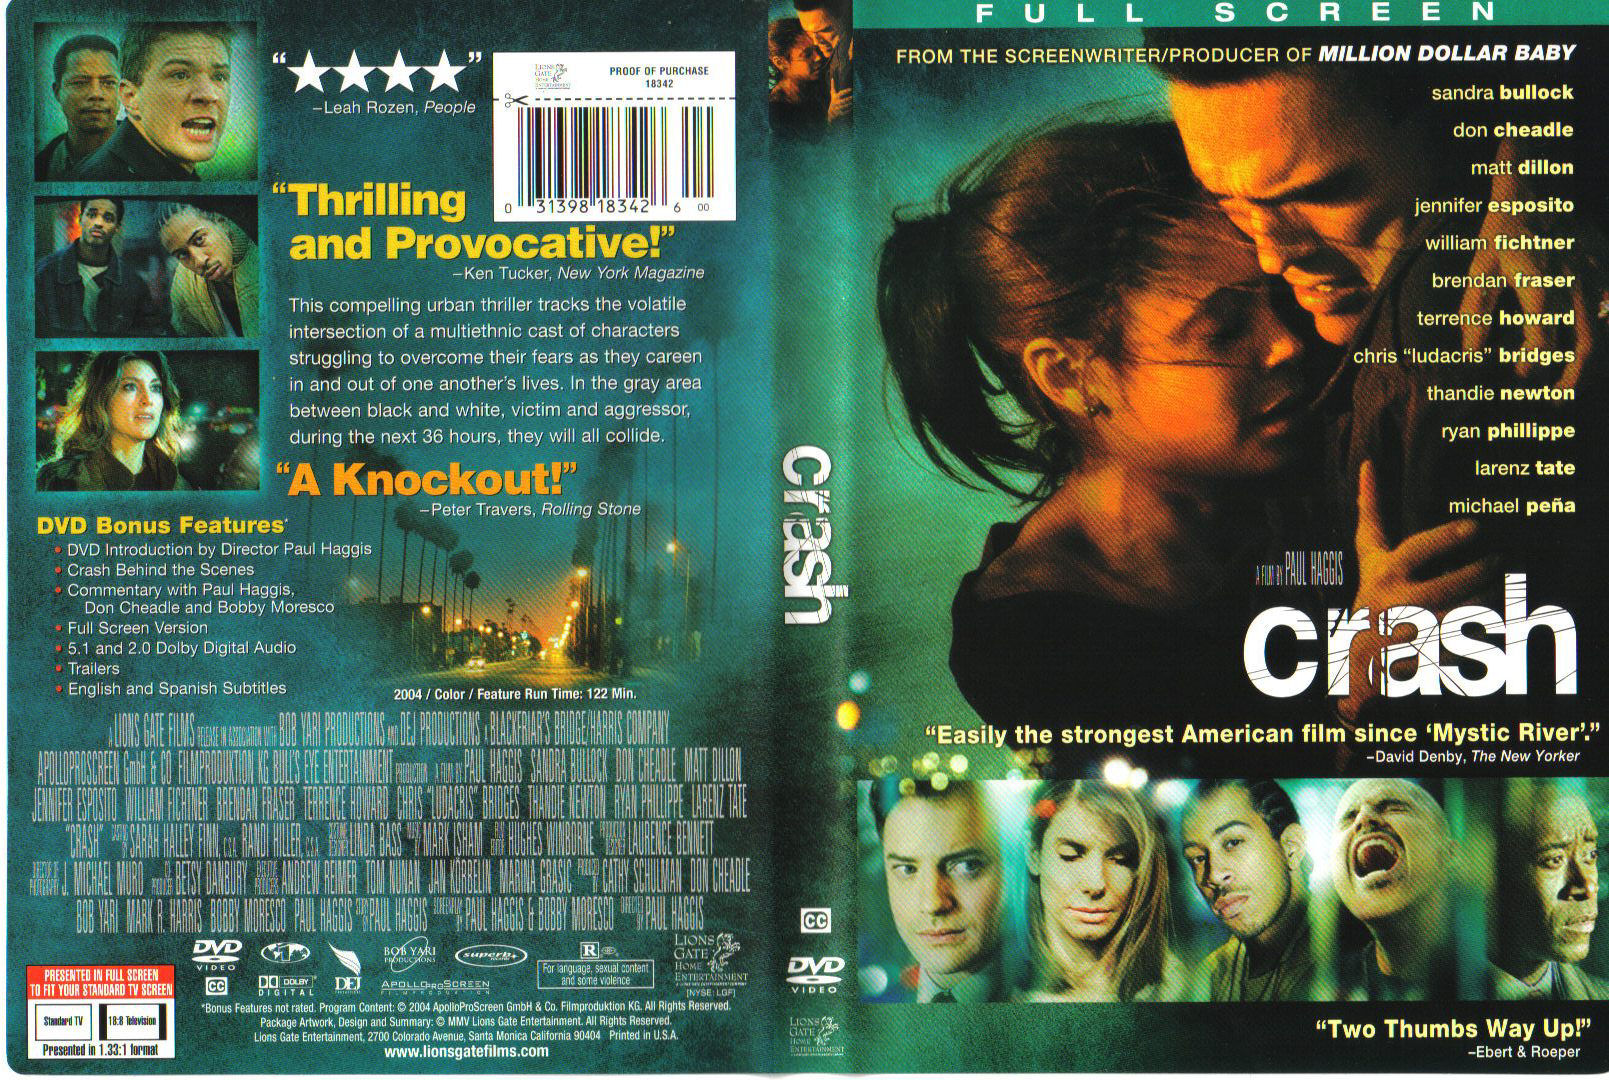 Crash (2004) Sandra Bullock